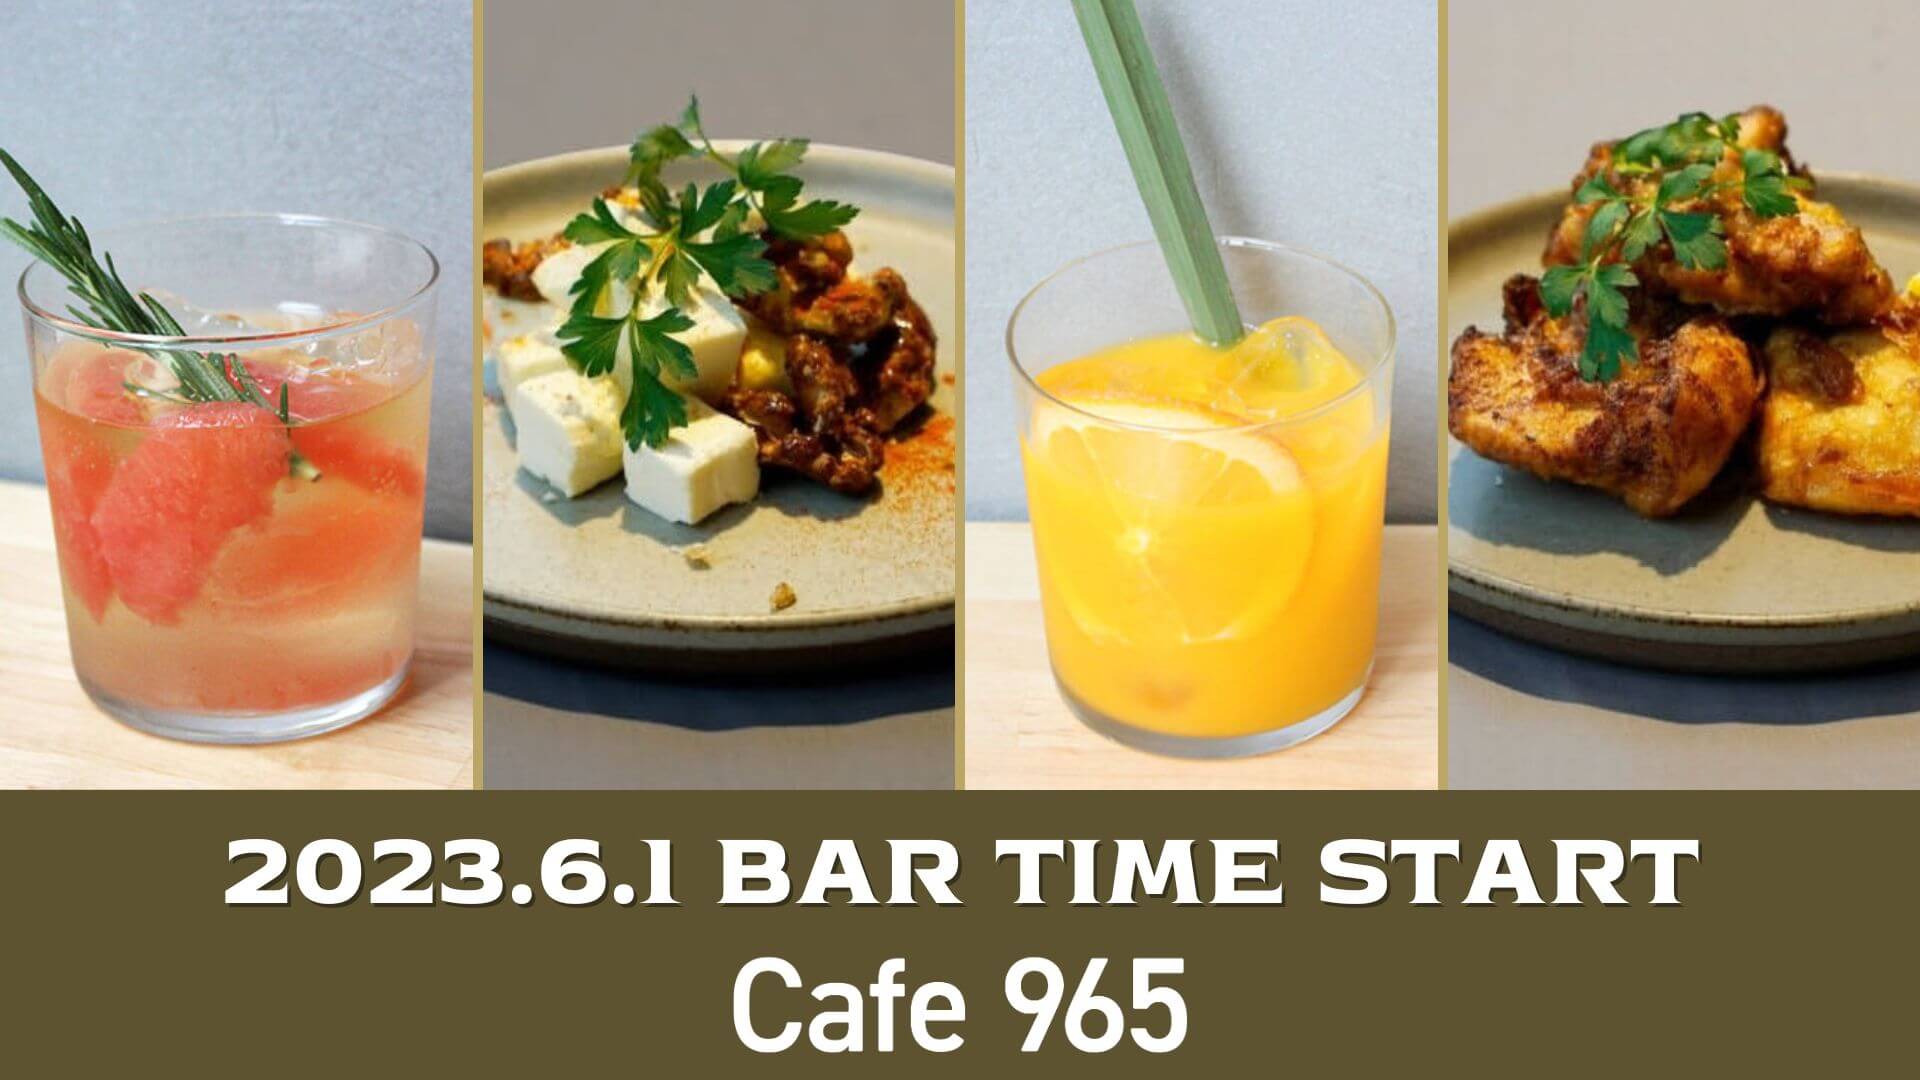 【Cafe965】6月1日(木) からバータイムをスタート！ カフェ飲みで美味しいドリンクと一緒に一日の終りを心地よく